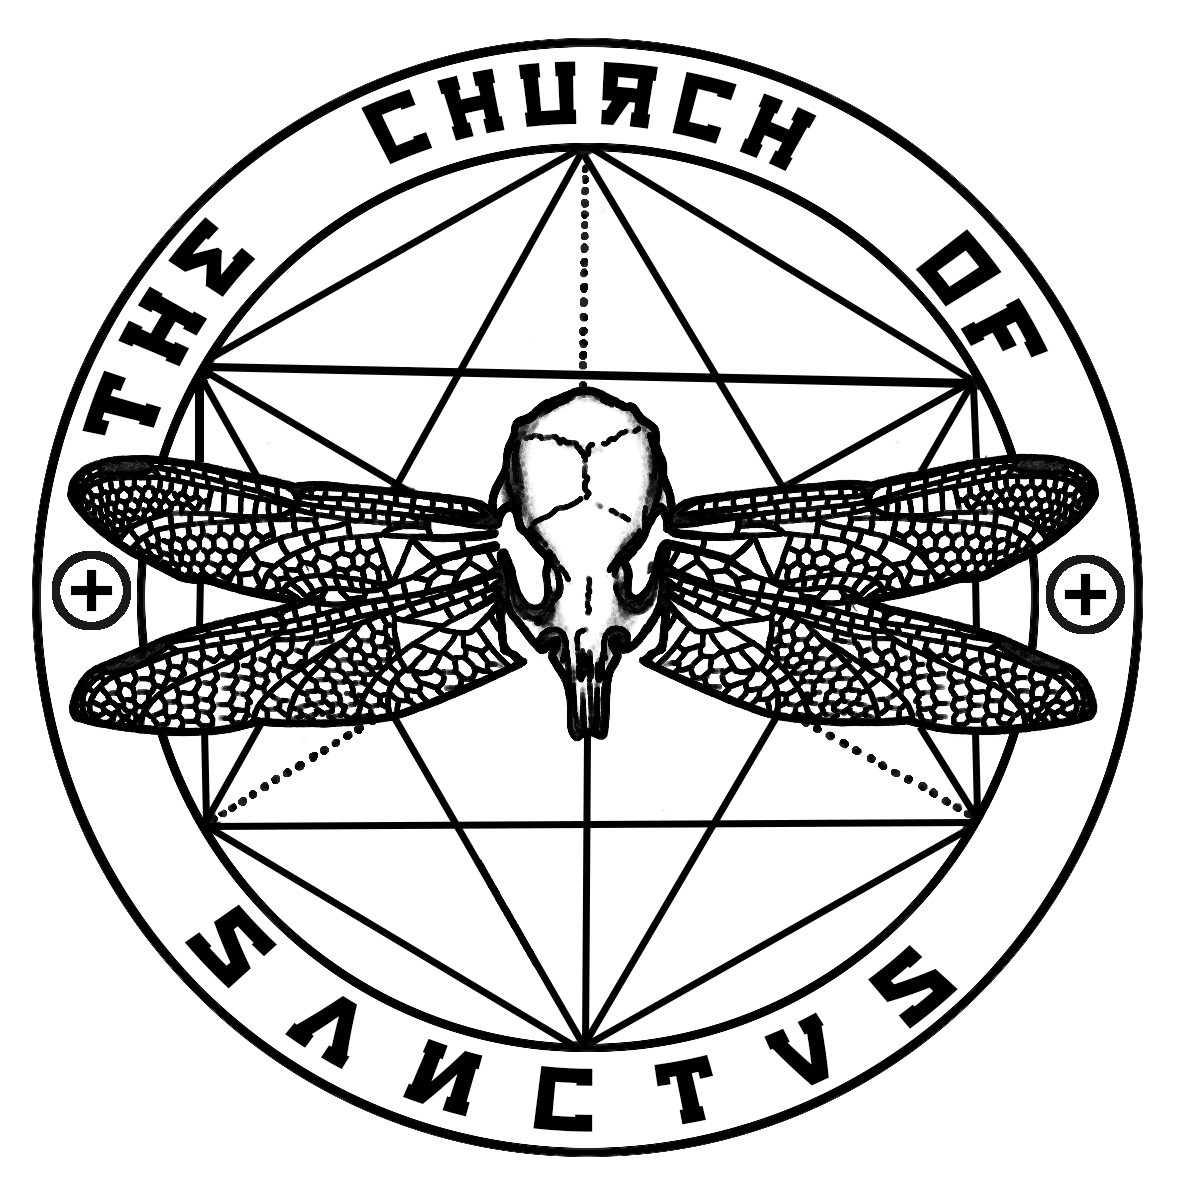 Church of Sanctus